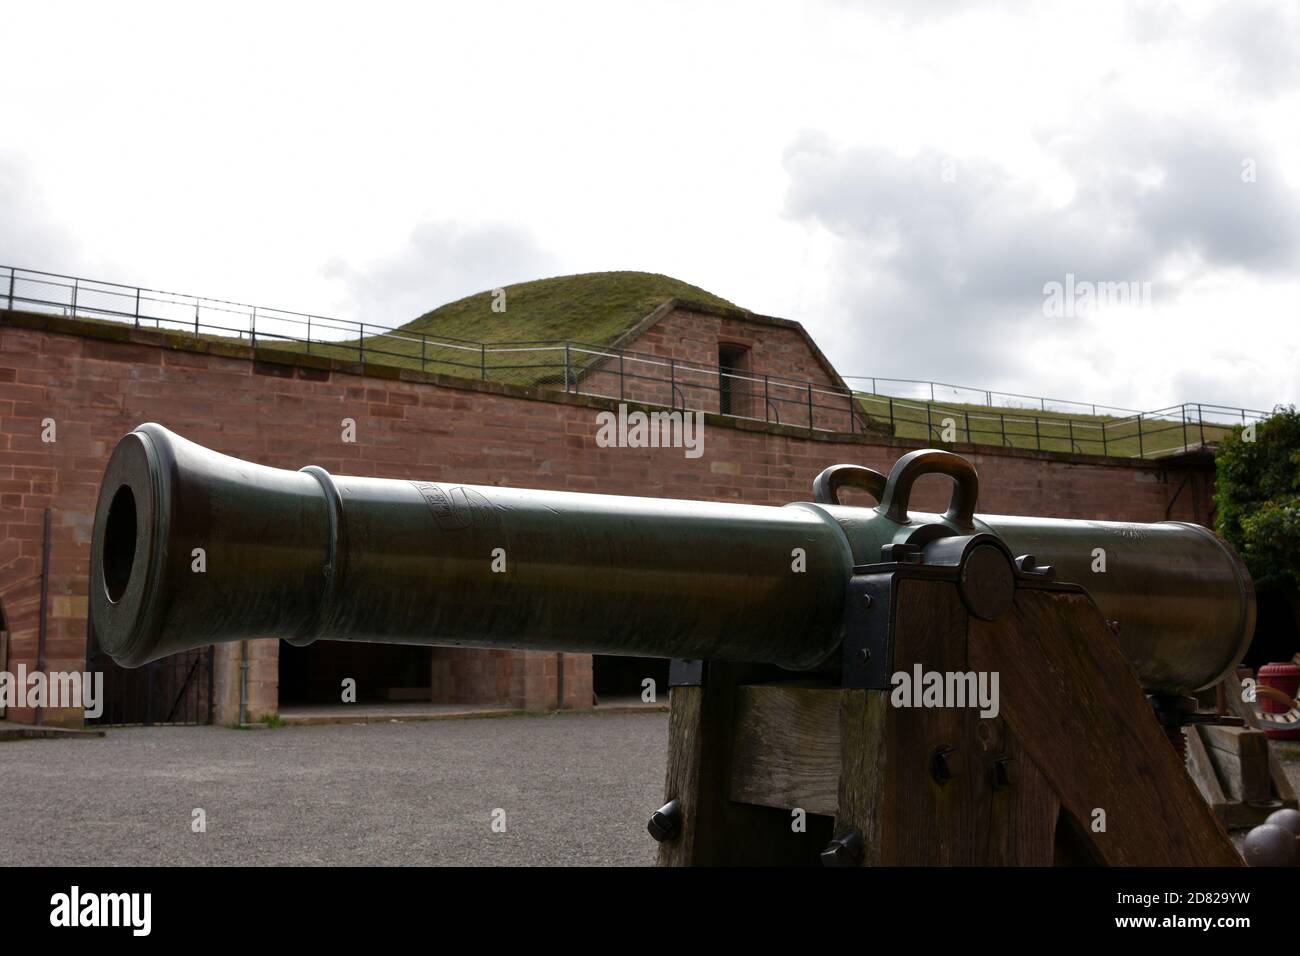 Kanone, eine historische Artillerie, Metall-Geschoss-Waffe in der seitlichen Ansicht, ein Artefakt auf dem Boden der Zitadelle oder Festung von Belfort, Frankreich. Stockfoto